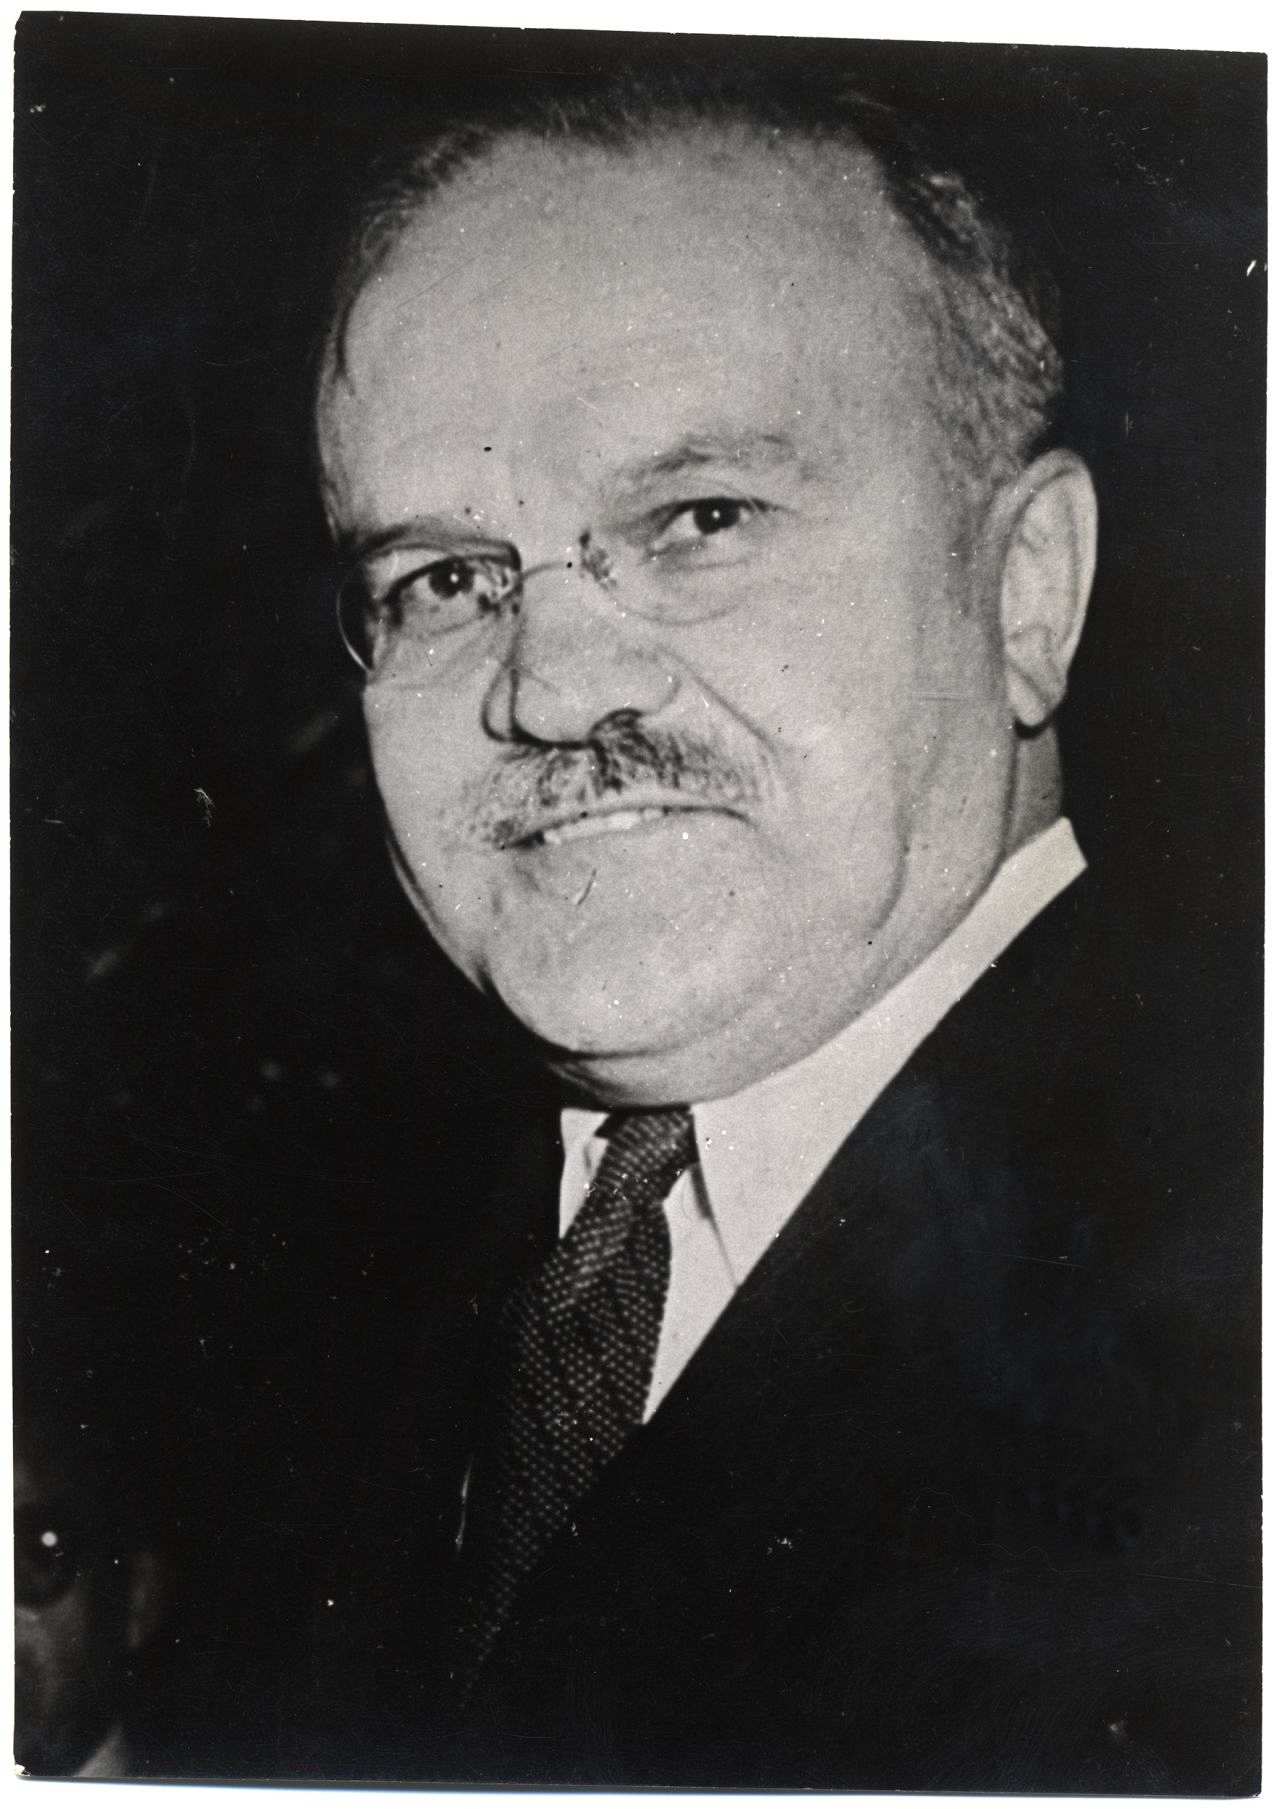 Porträt von Wjatscheslaw M. Molotow, Außenminister der UdSSR (1939-1949).